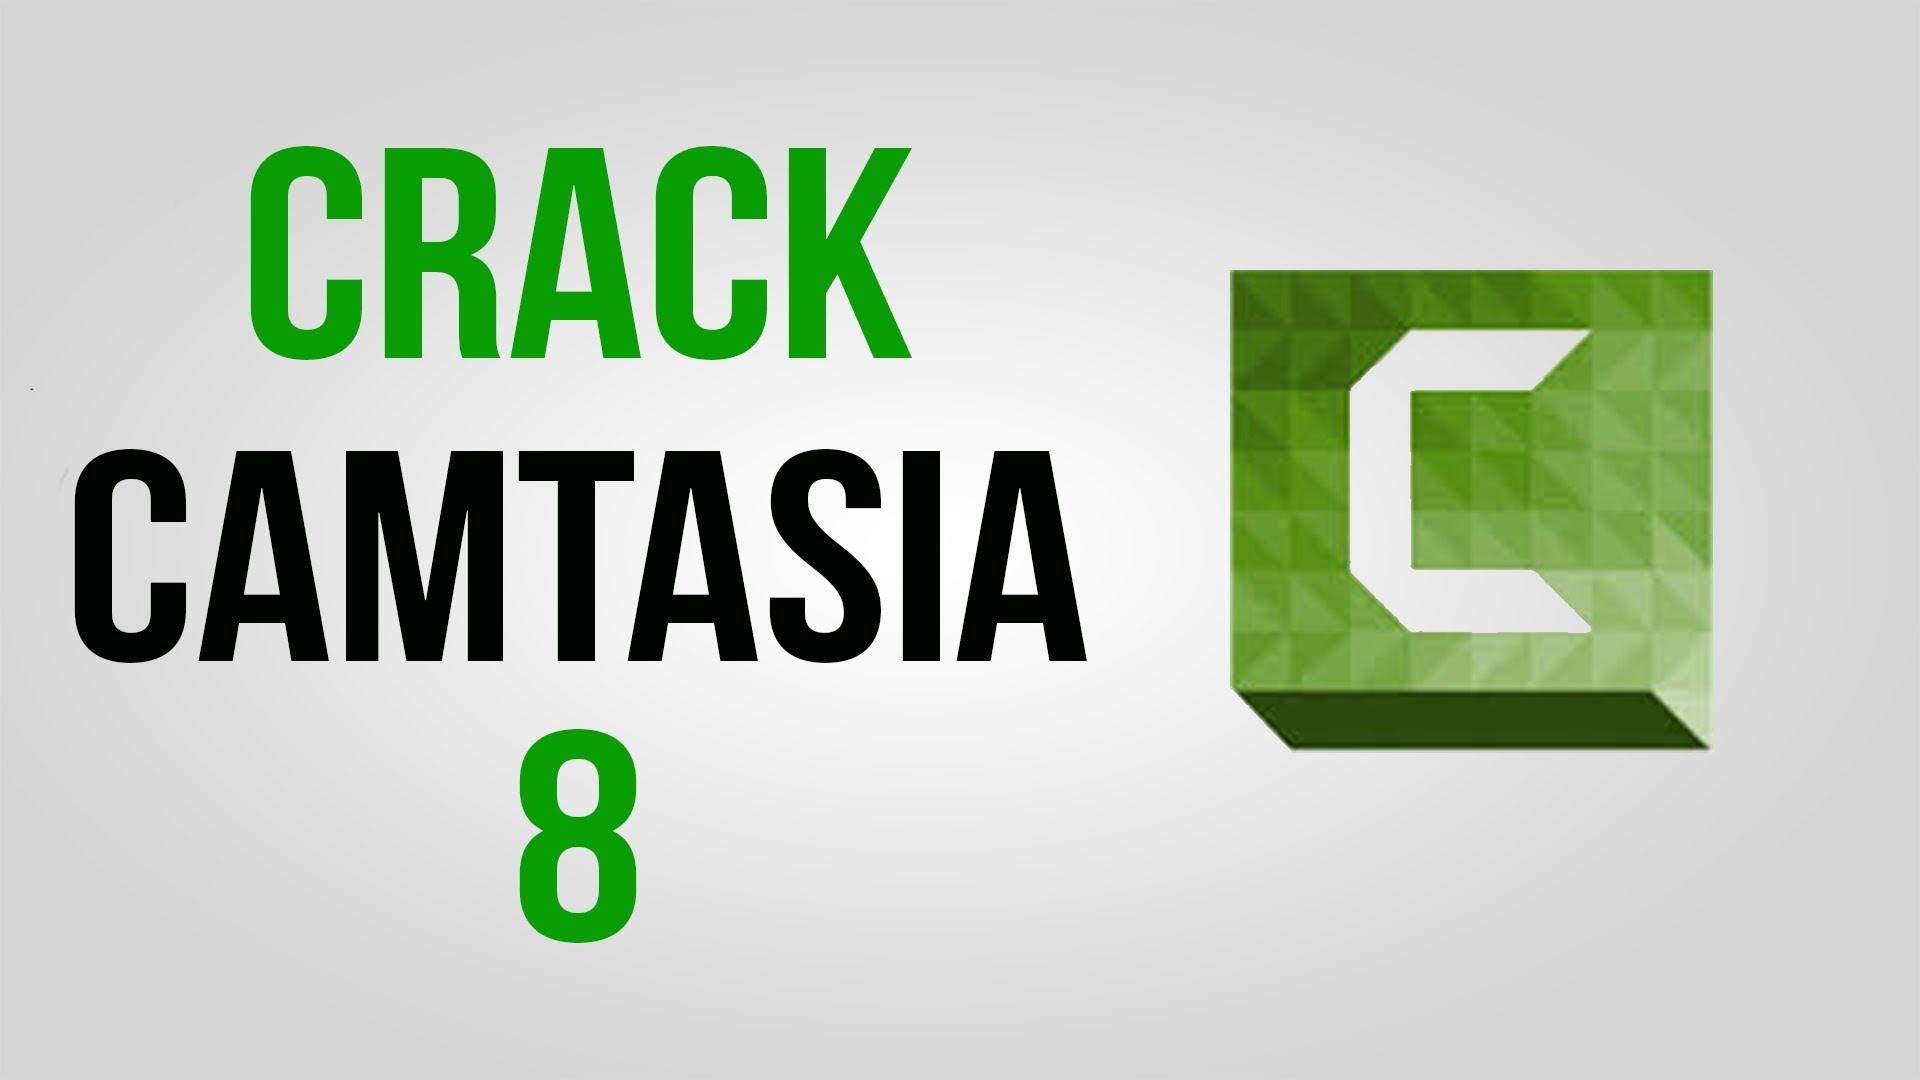 camtasia studio 8 crack download